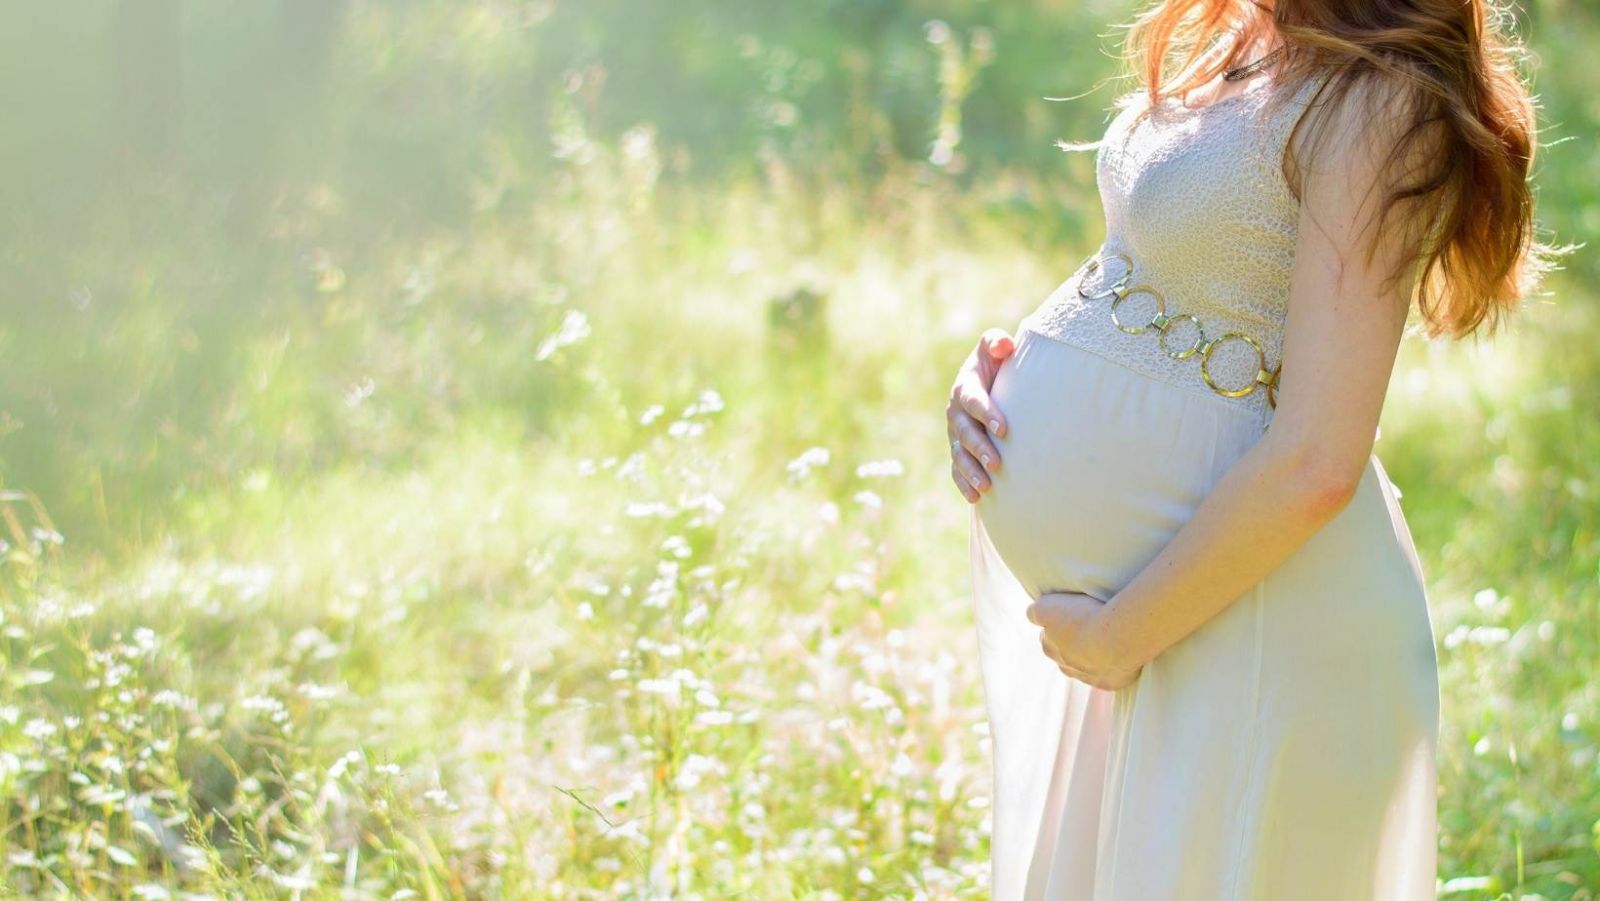 Framboisier pour déclencher l'accouchement : une grossière erreur à éviter pendant la grossesse !